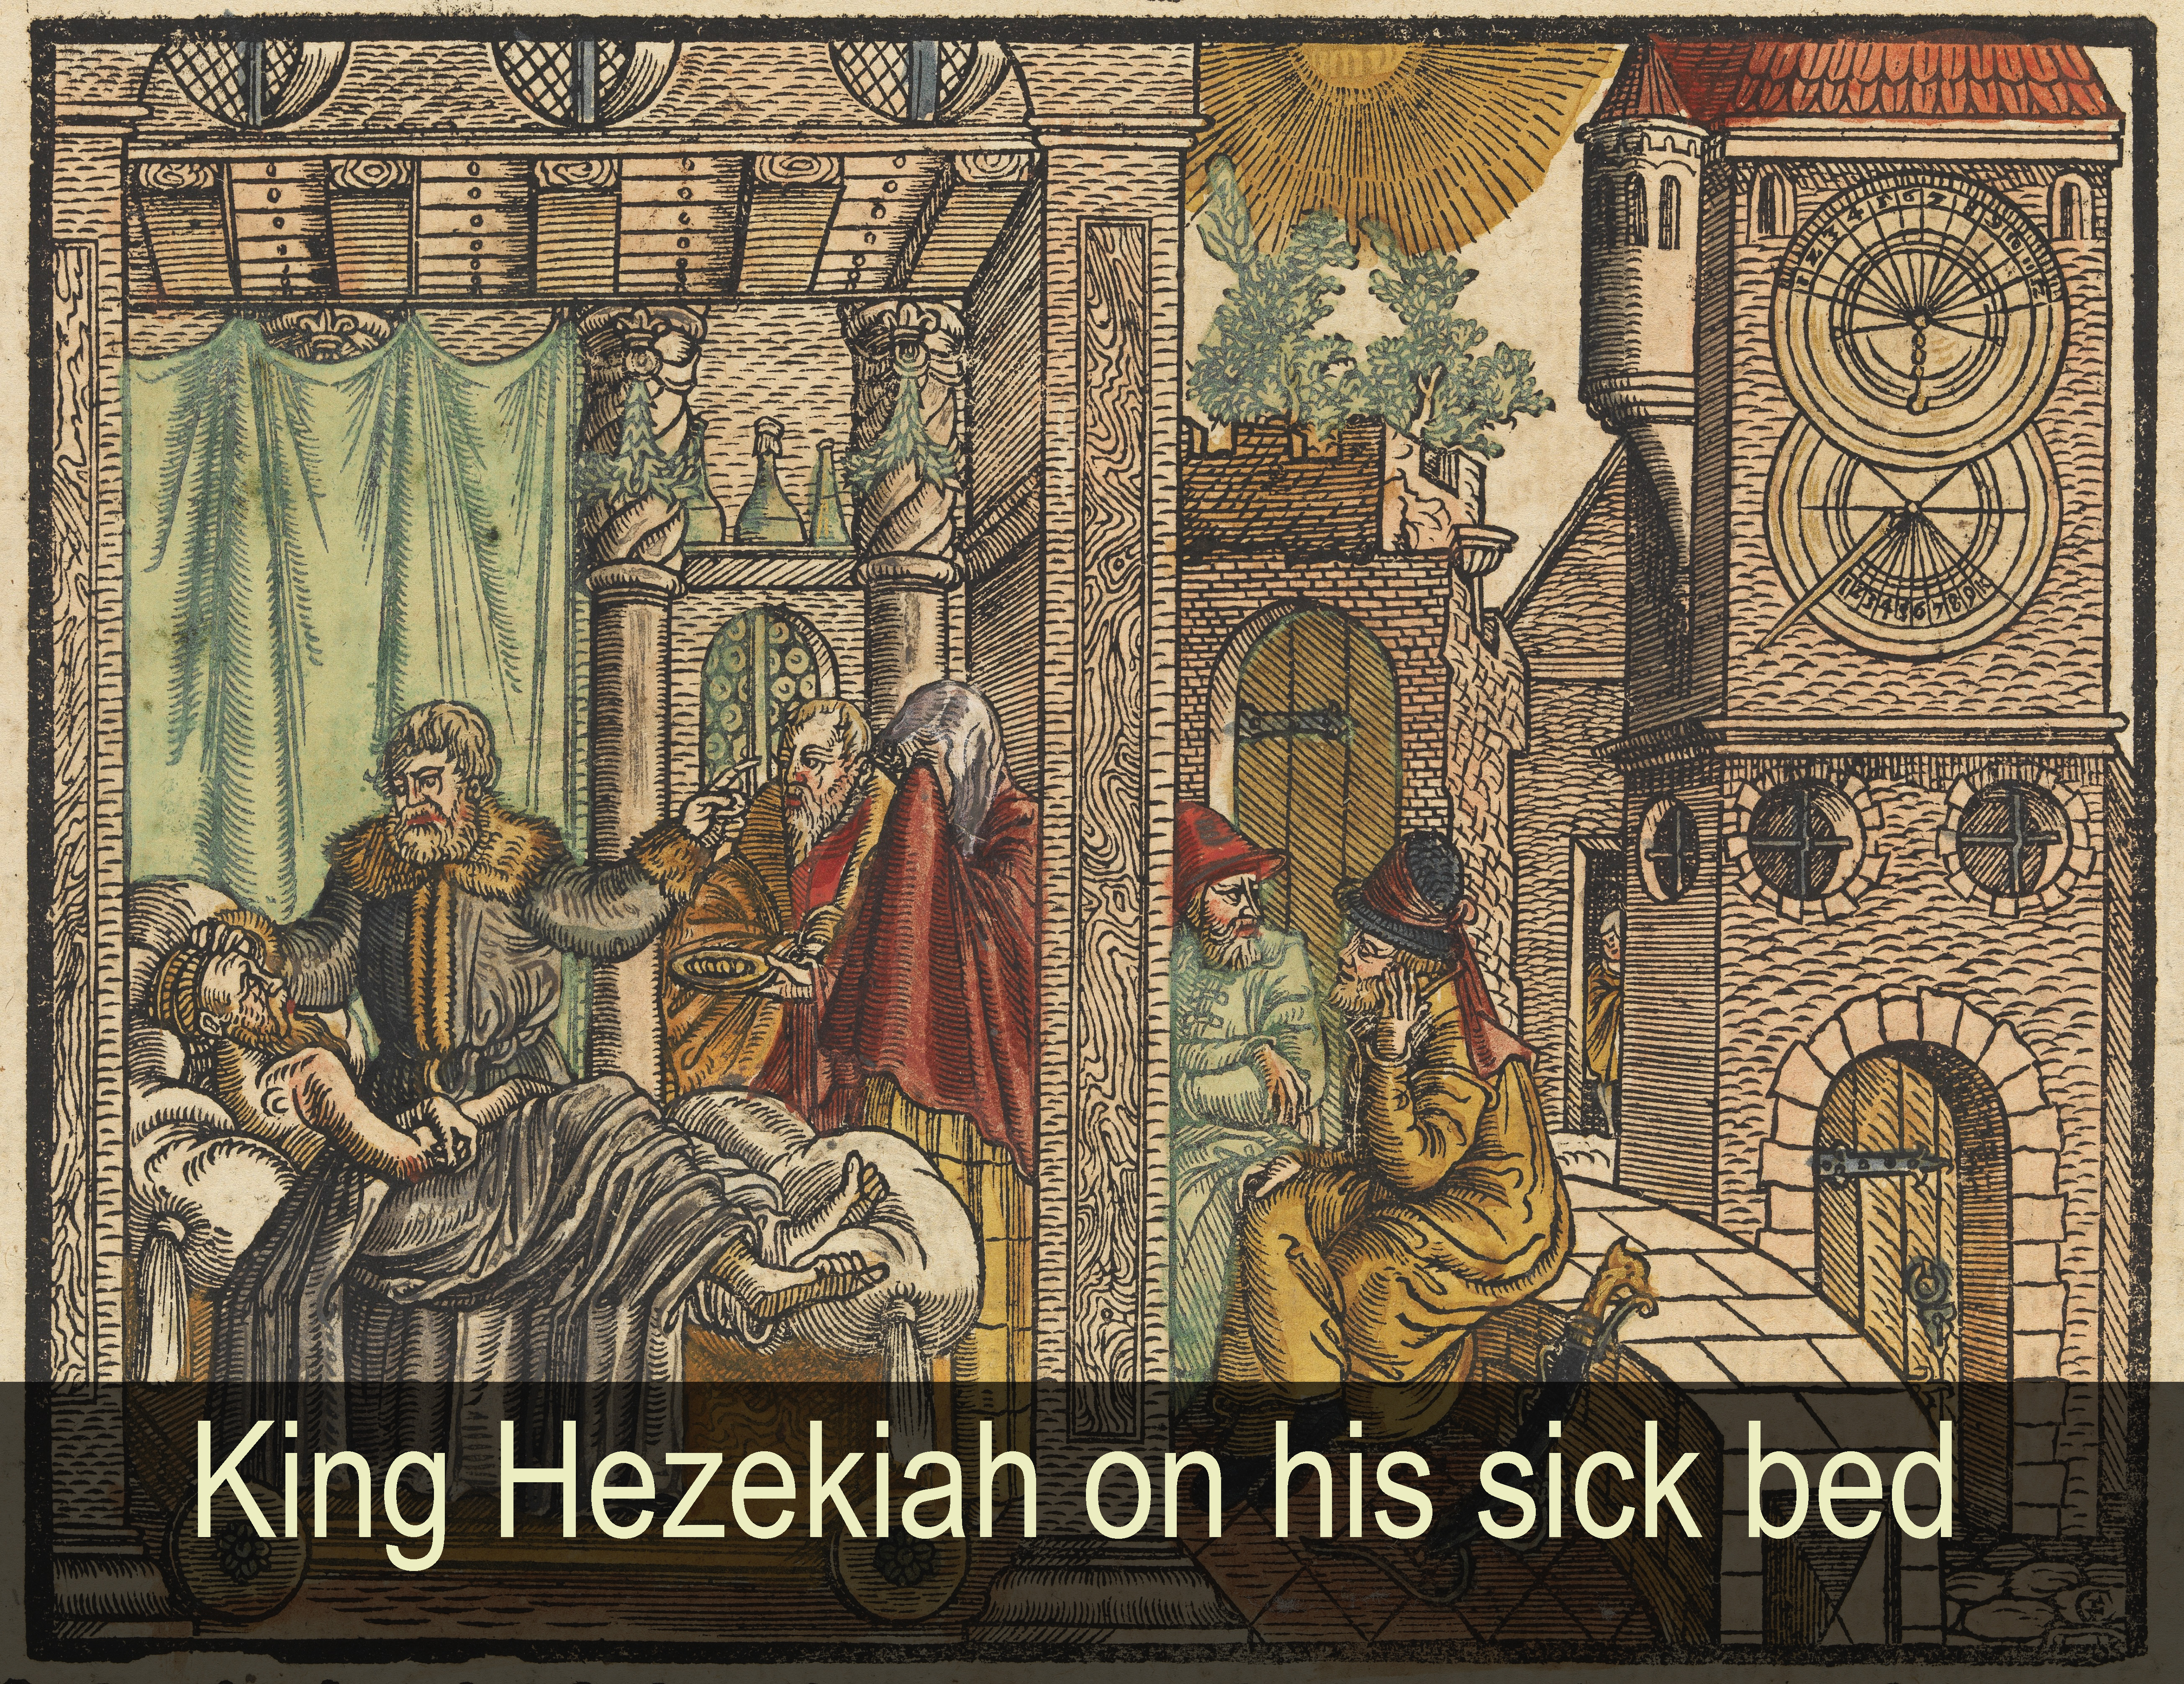 God healed Hezekiah